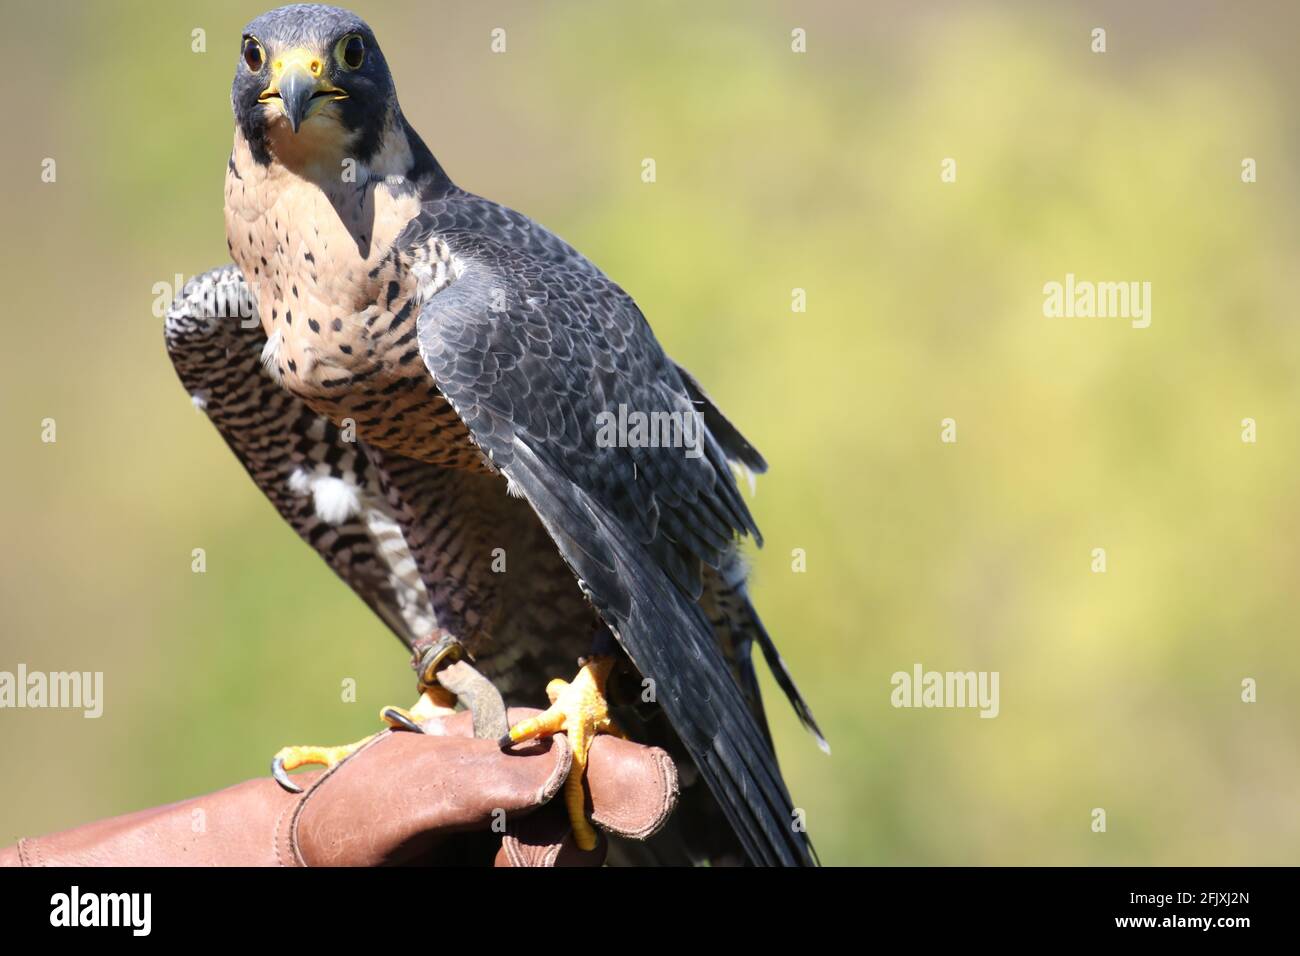 Splendido falco peregrino appollaiato sul guanto di protezione in pelle falconer Foto Stock